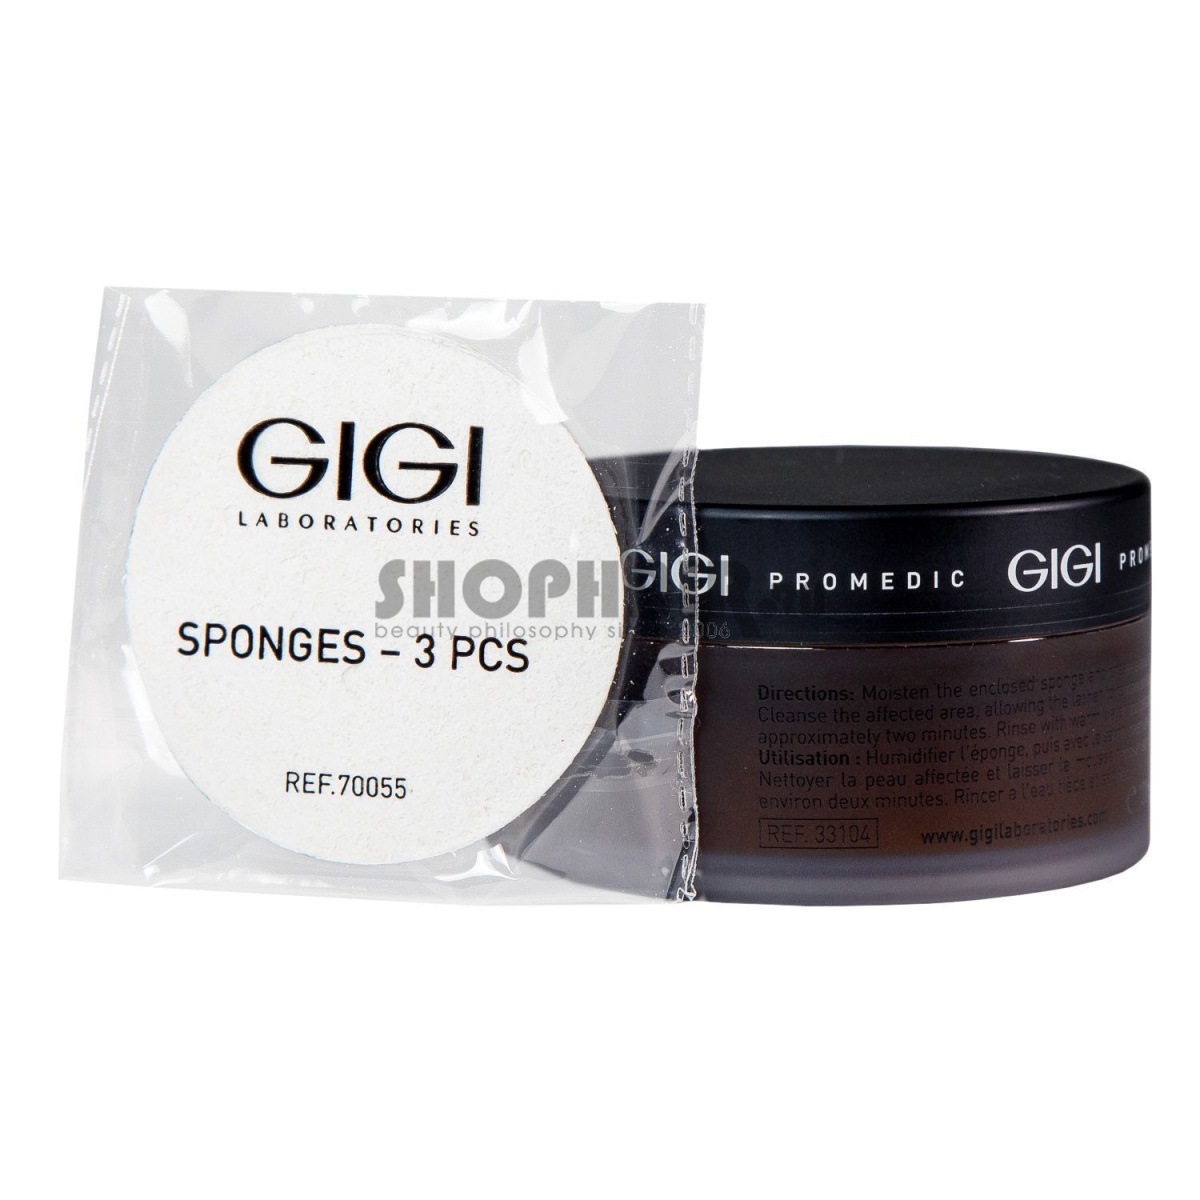 Мыло-антипигмент со спонжем Pigment Clear Skin Soap Bar, 100 г GIGI (Израиль) купить по цене 6 426 руб.